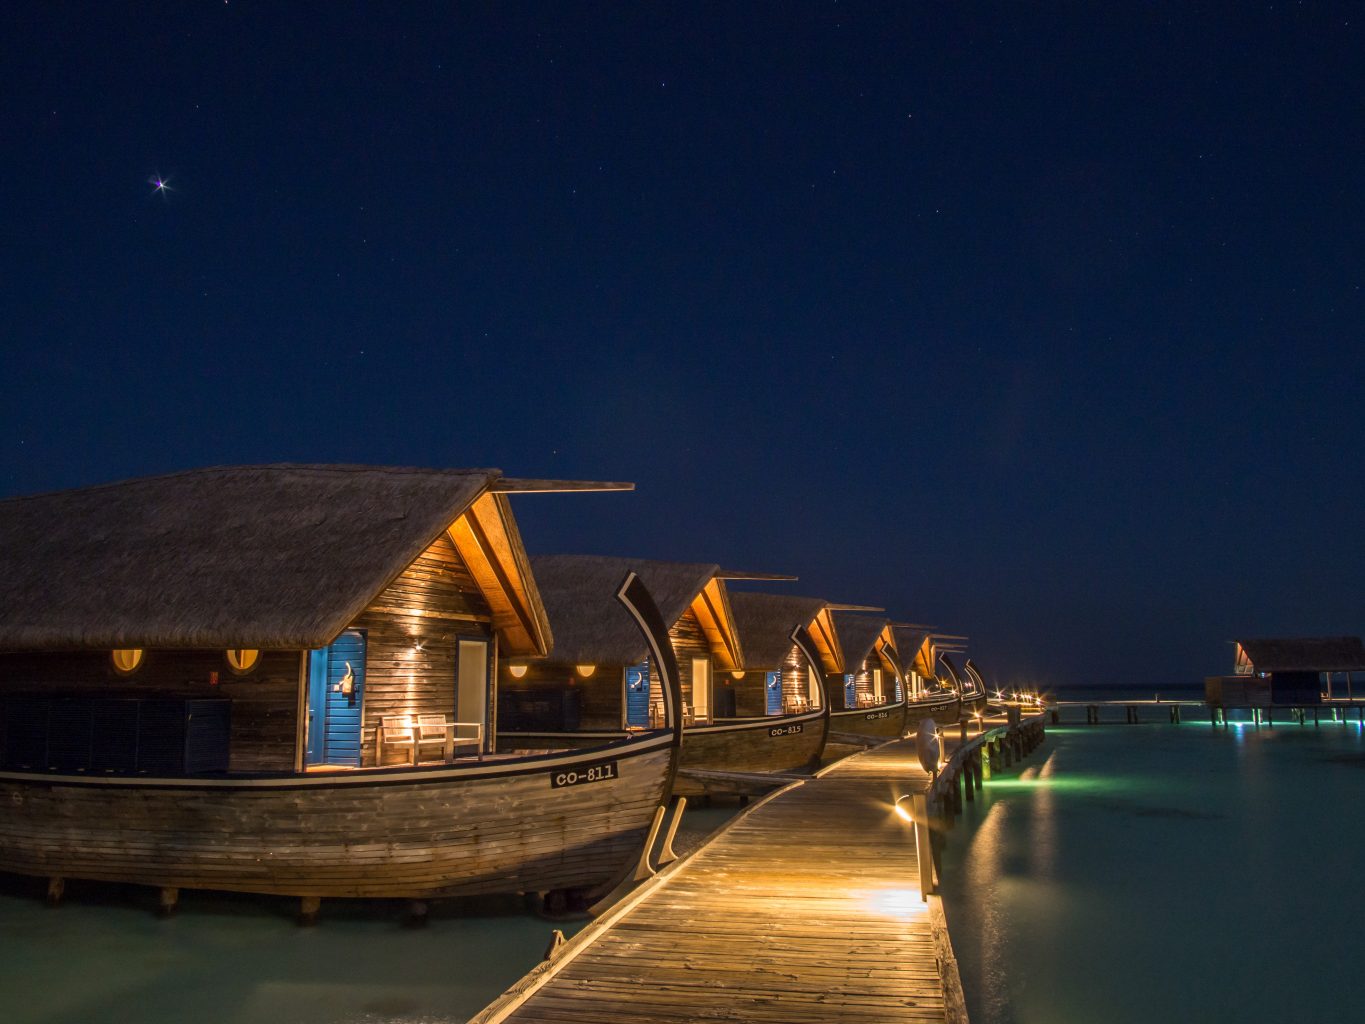 جزيرة الكاكاو كومو .. روعة السفر إلى جزر المالديف 